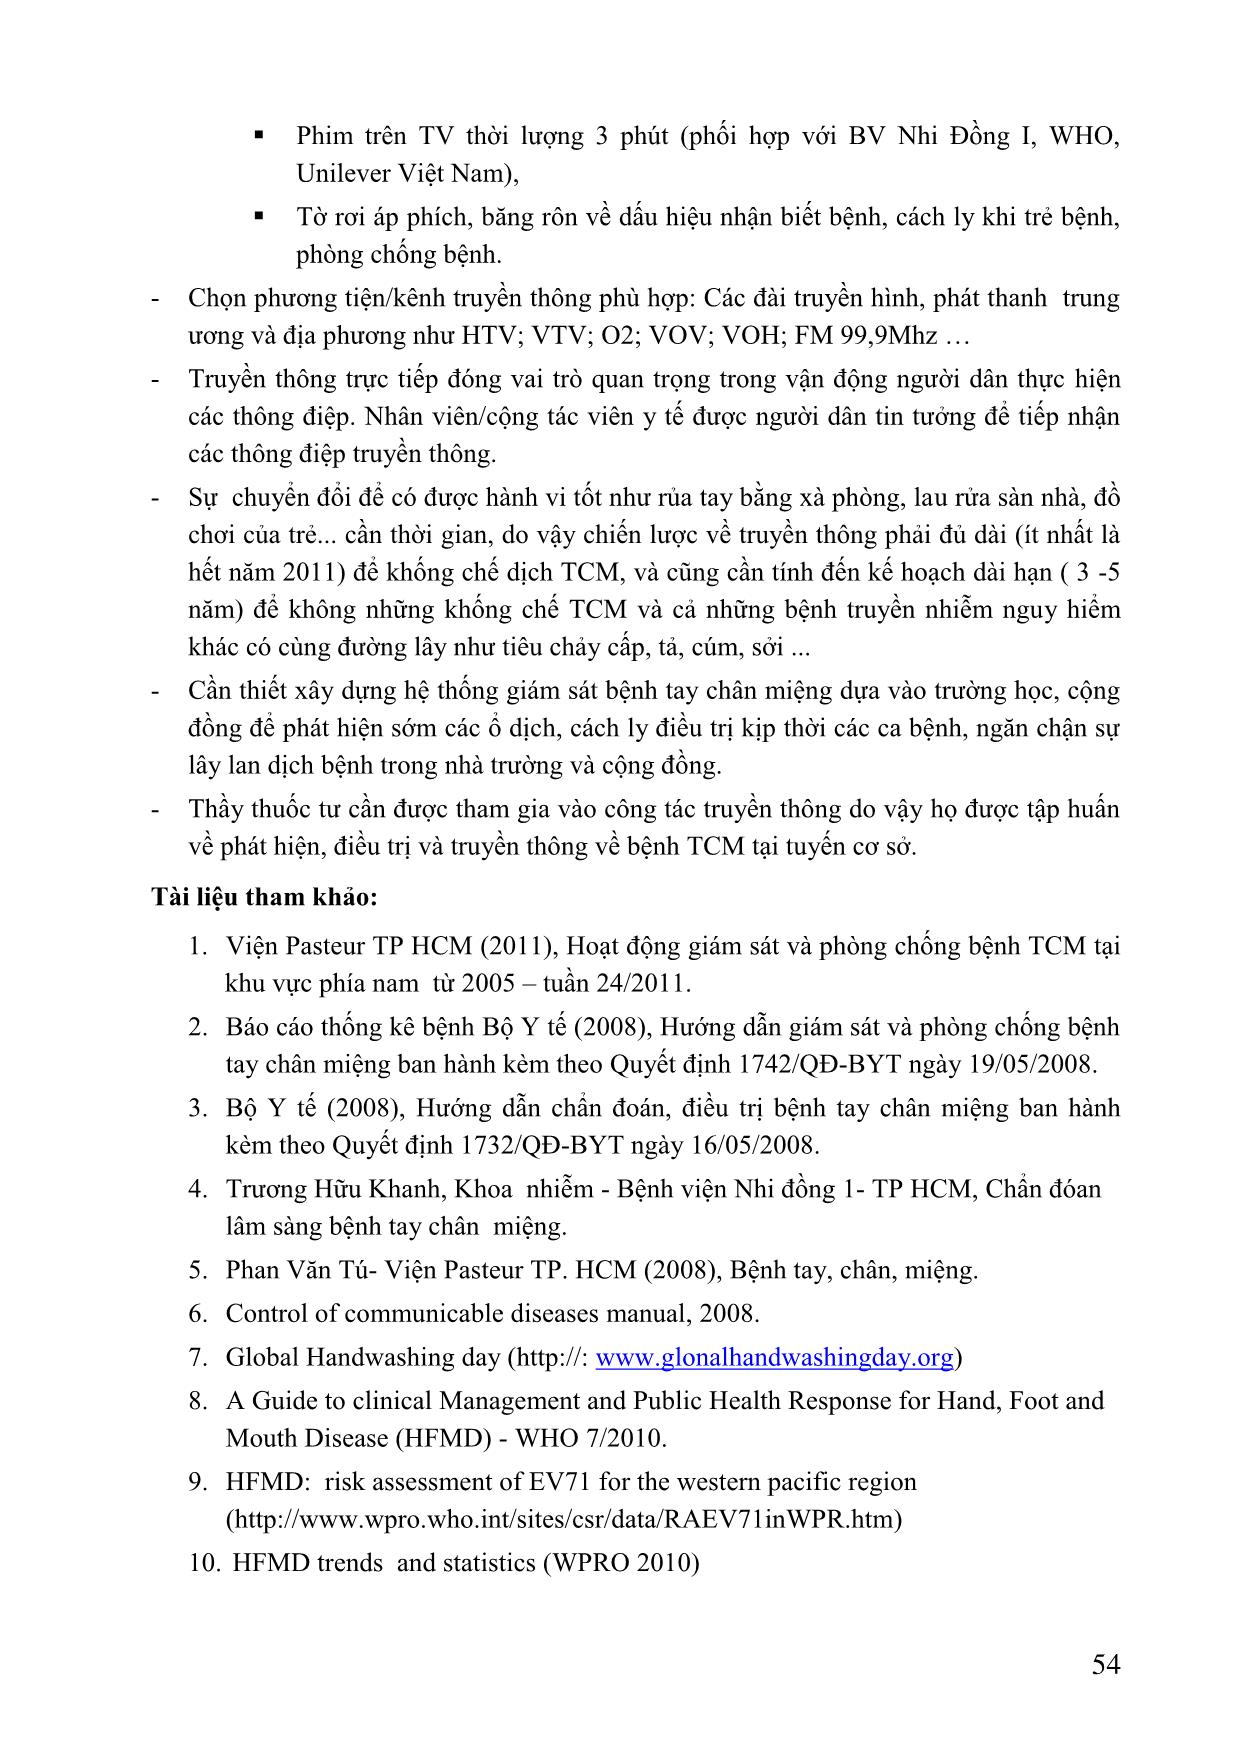 Kiến thức - Thực hành của người chăm sóc trẻ dưới 5 tuổi tại TP. Hồ Chí Minh về bệnh tay chân miệng, năm 2011 trang 9